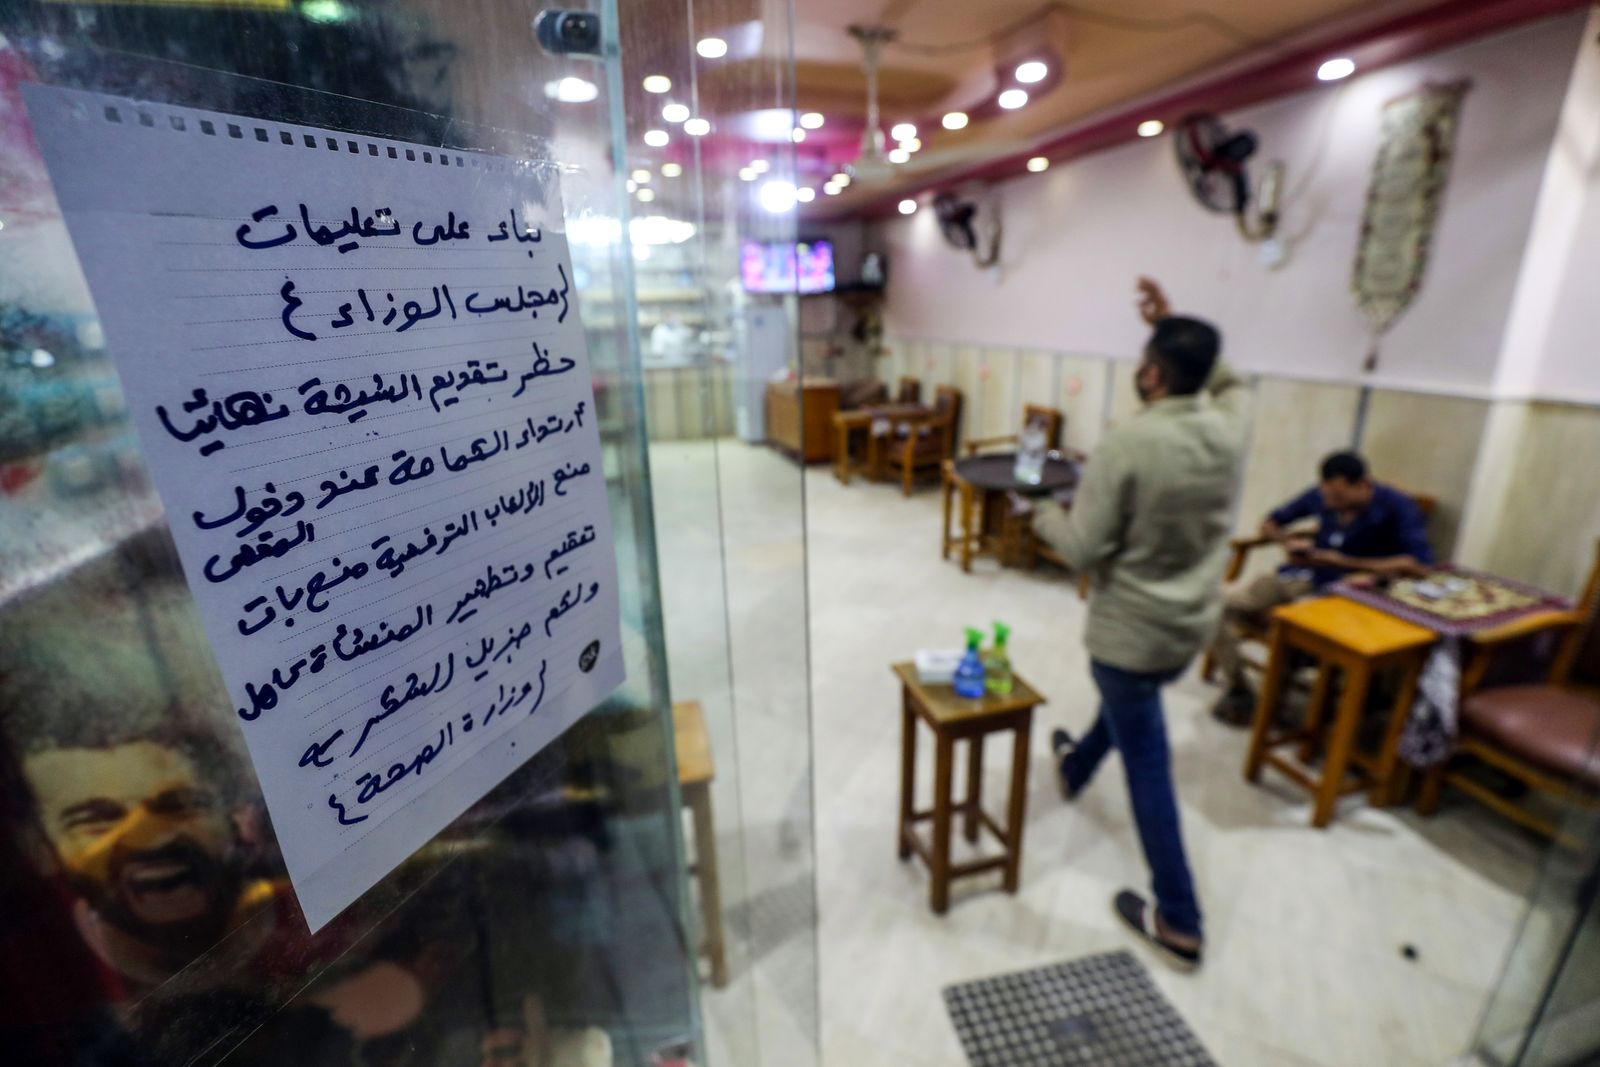 لافتة تدعو الزبائن لاتباع تعليمات وزارة الصحة على باب مقهى في القاهرة  - AFP